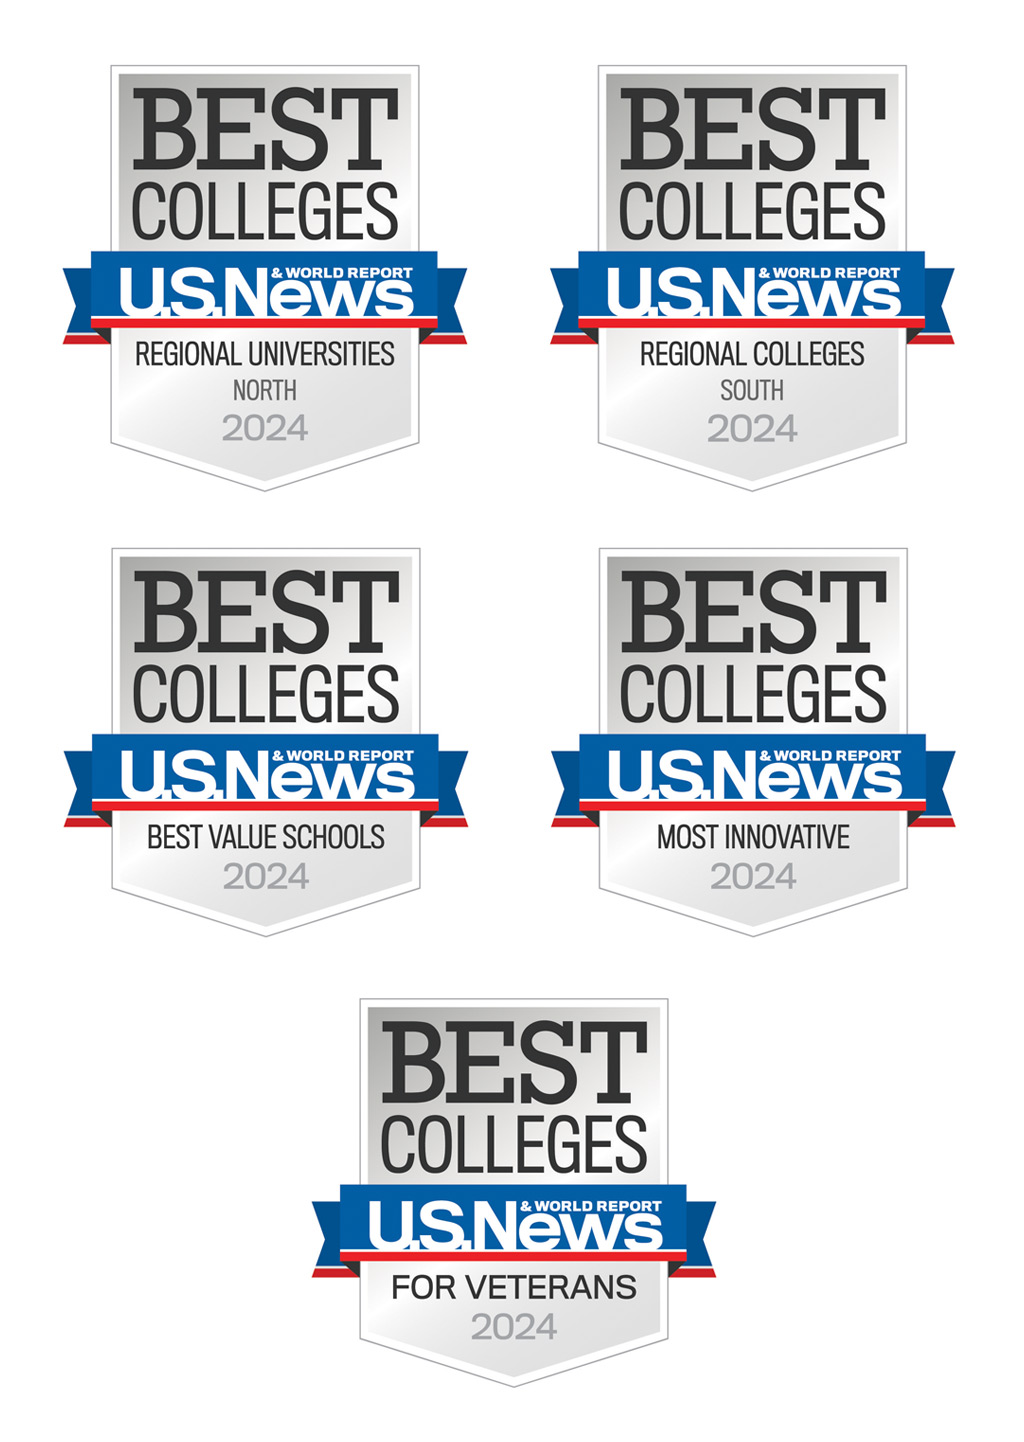 JWU Badges of Best Colleges vertical 2022-23